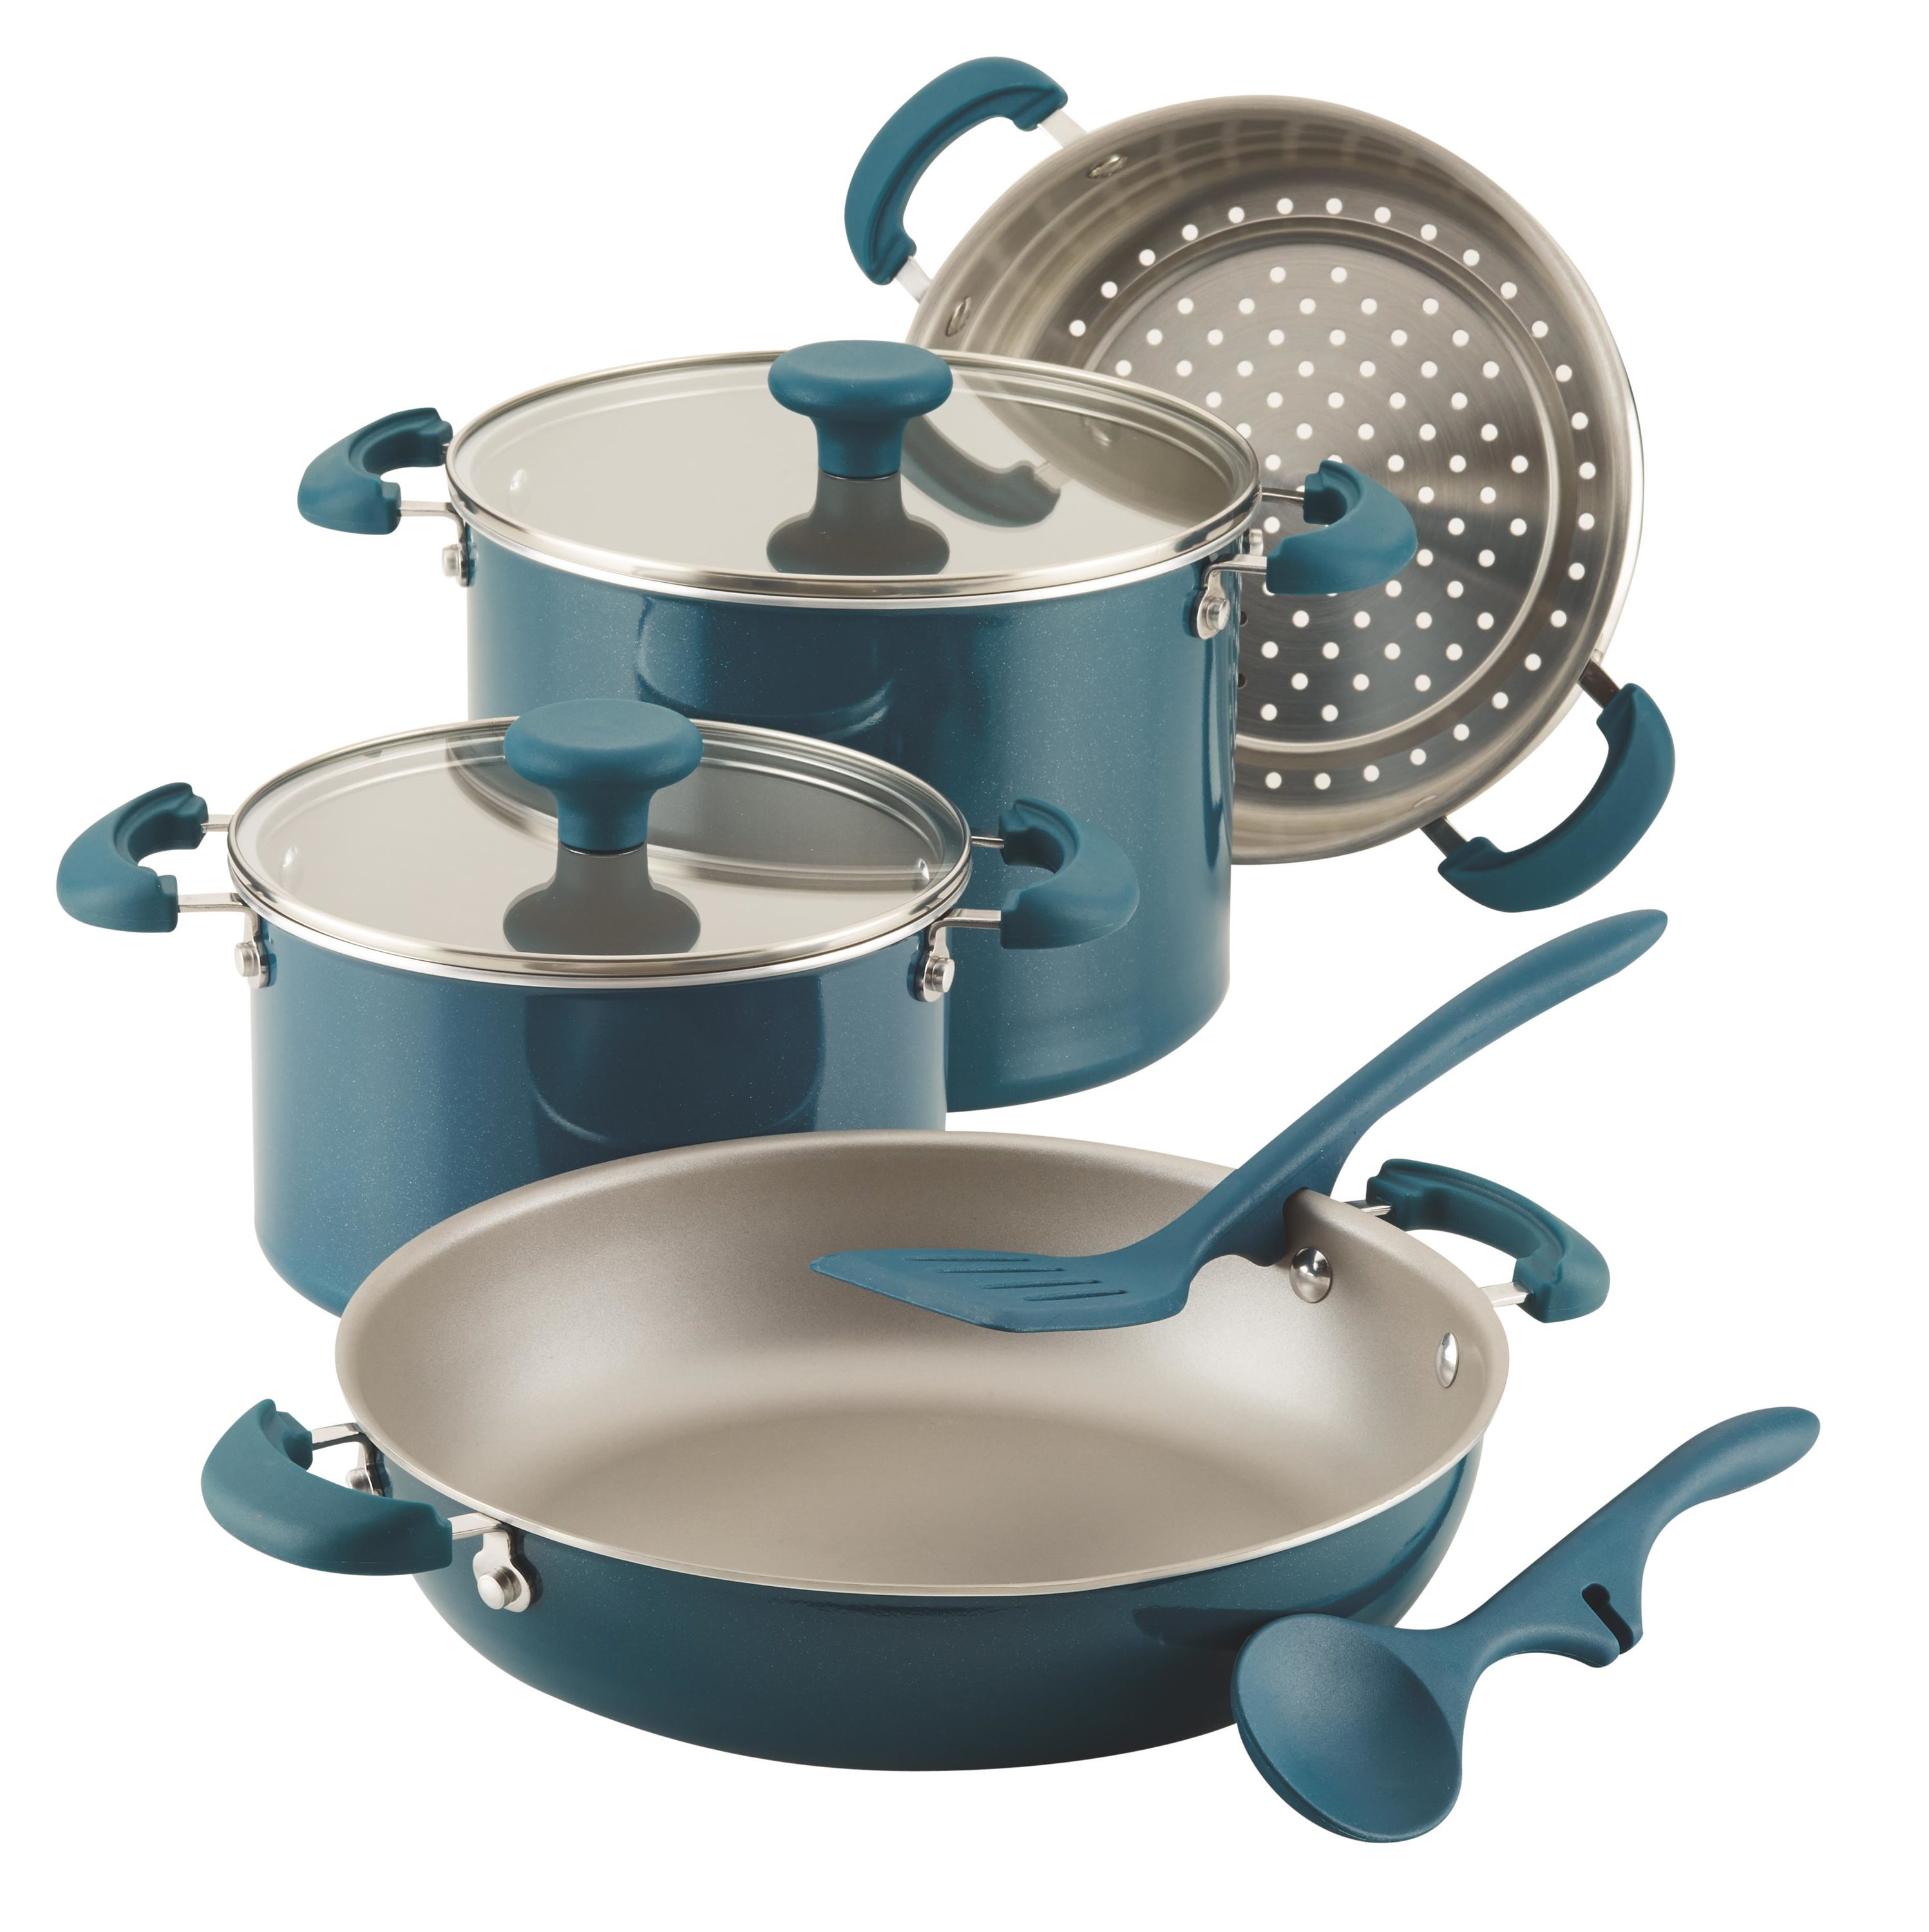  Rachael Ray 11-Piece Hard Anodized Aluminum Cookware Set, Light  Blue Handles: Home & Kitchen